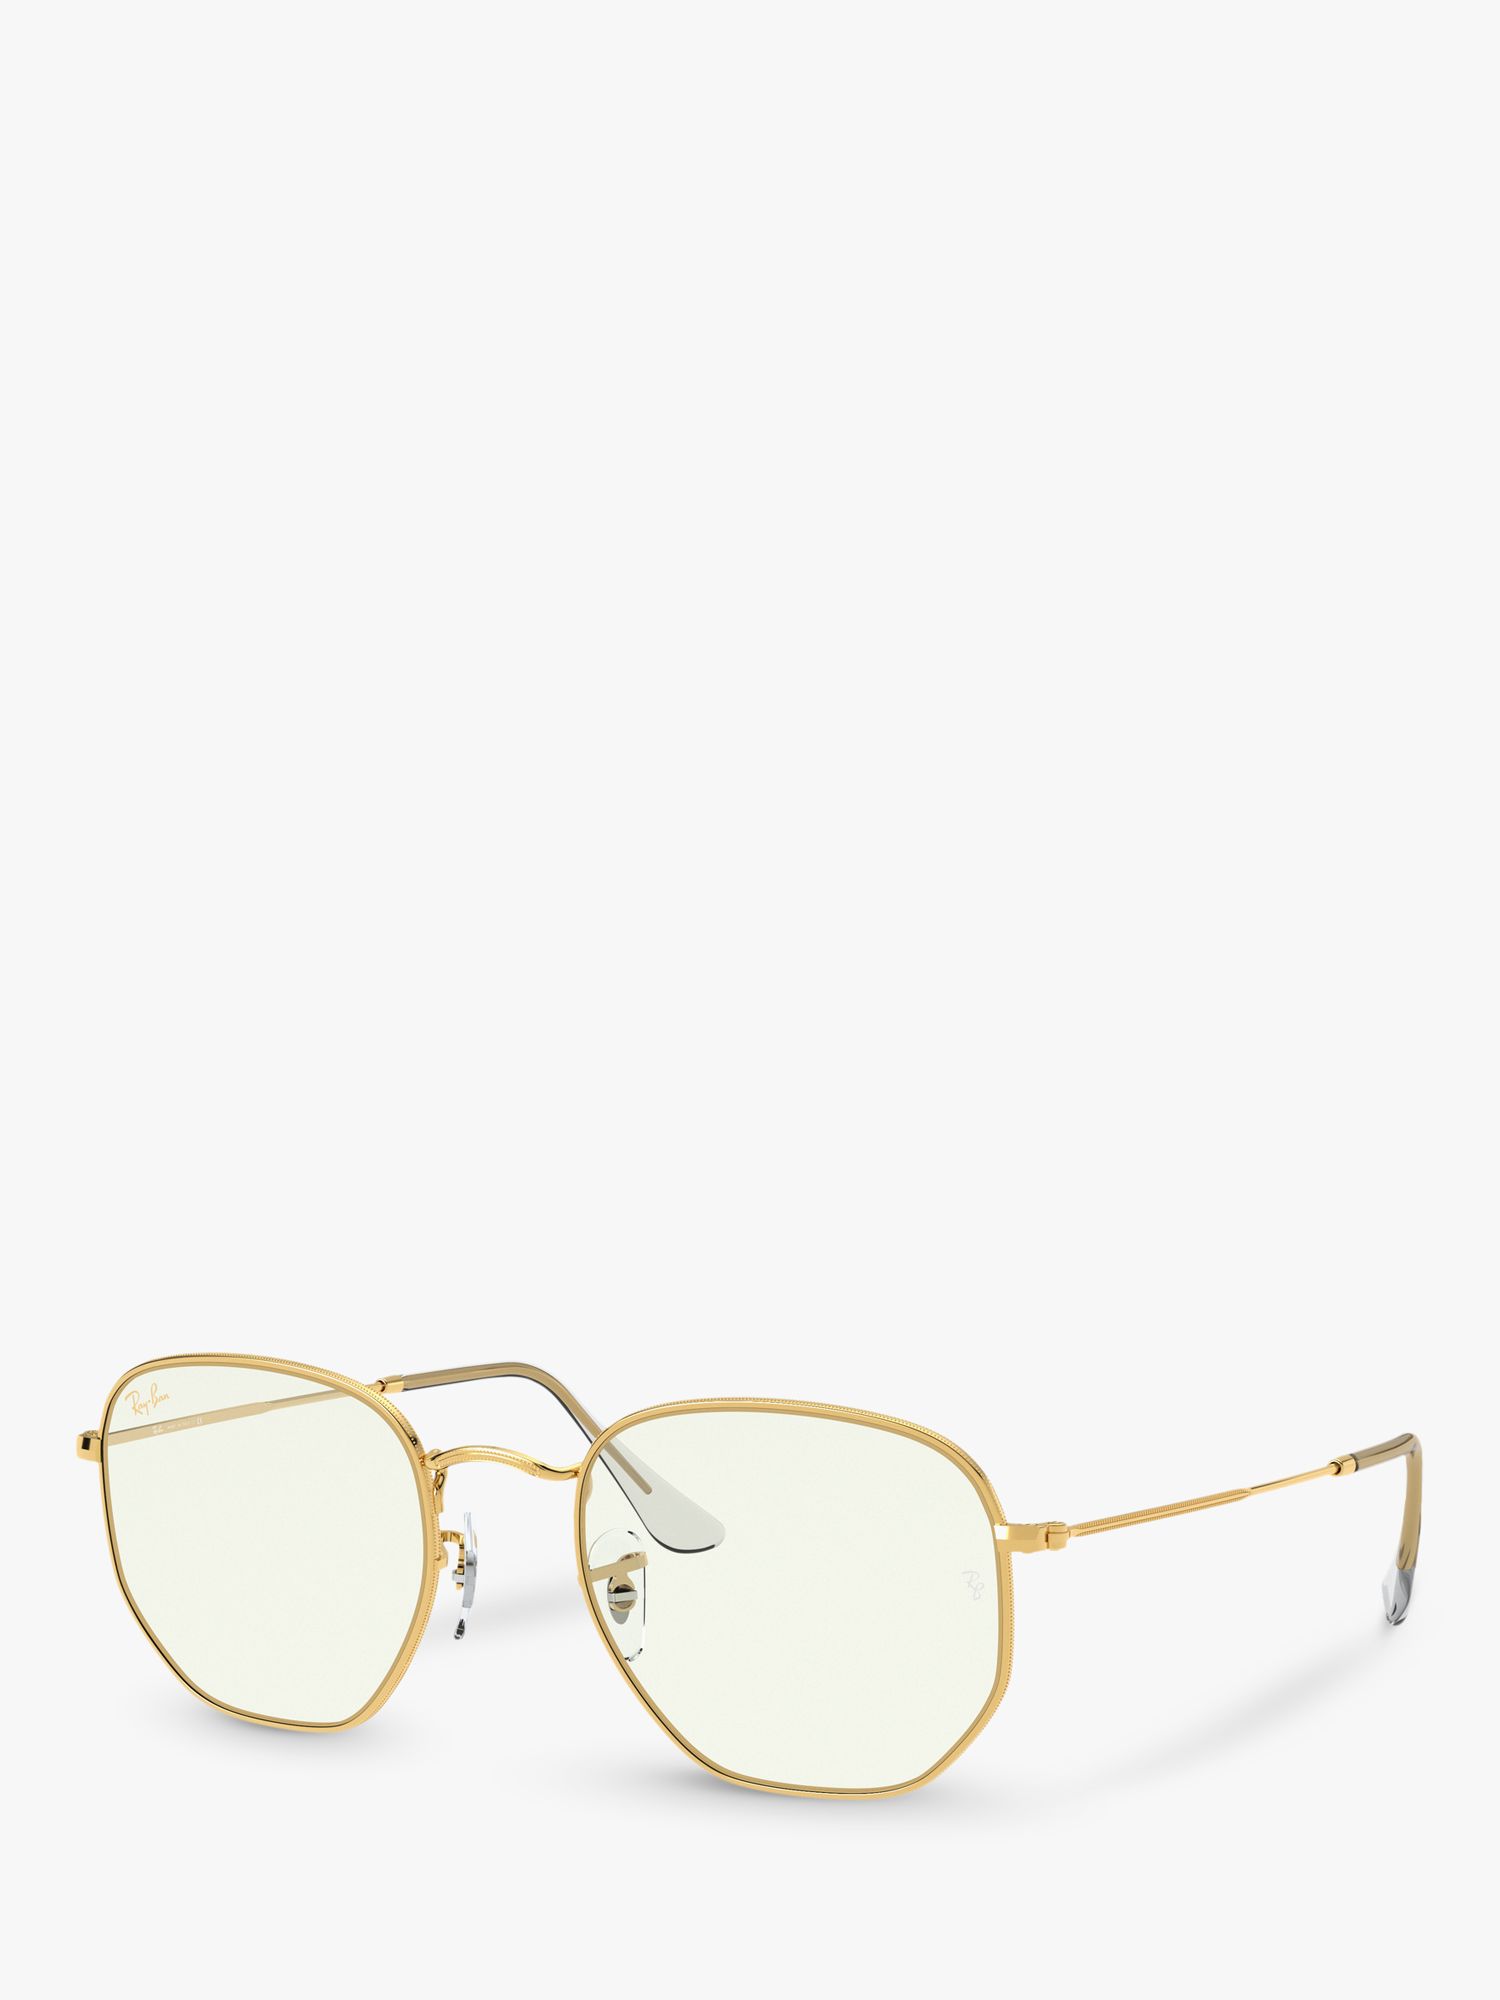 Женские шестиугольные солнцезащитные очки Ray-Ban RB3548, золотые